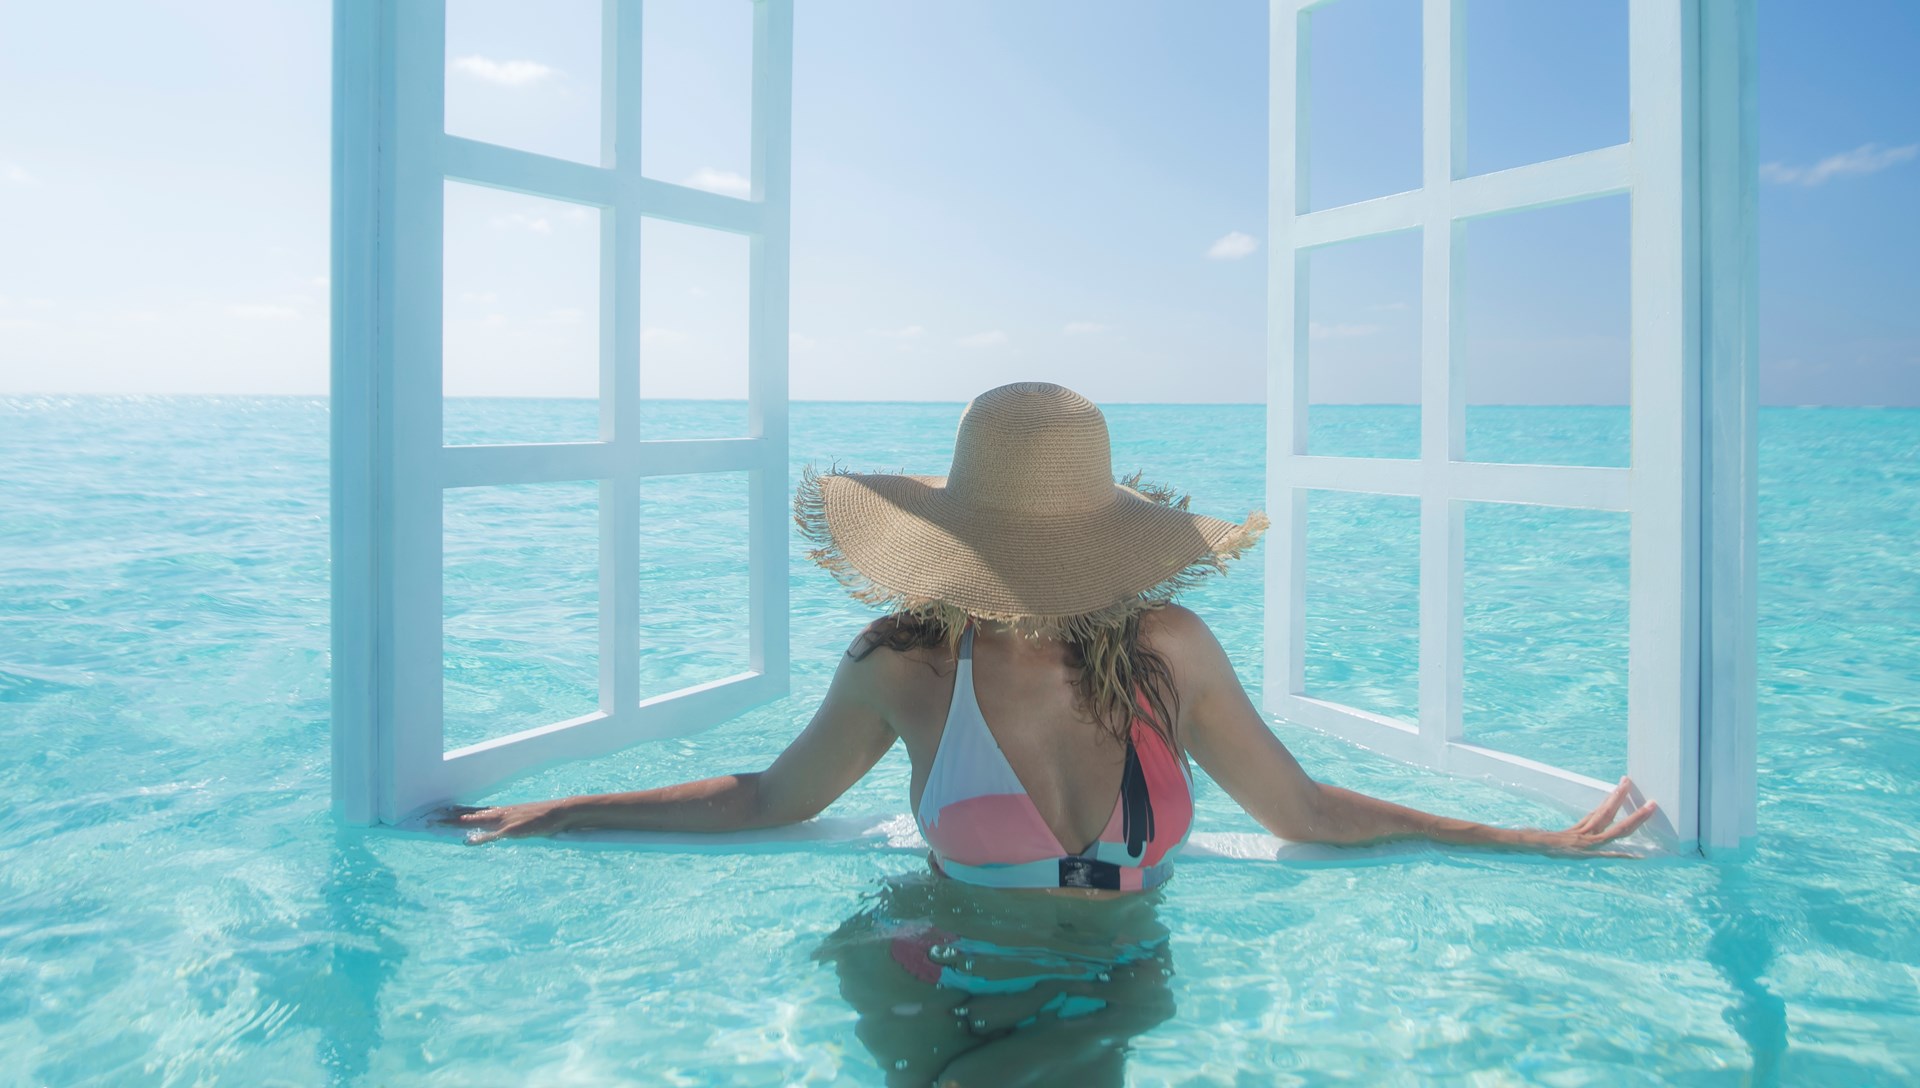 Kwalitatief resort met een perfecte combinatie tussen luxe en eenvoud Constance Moofushi Maldives 